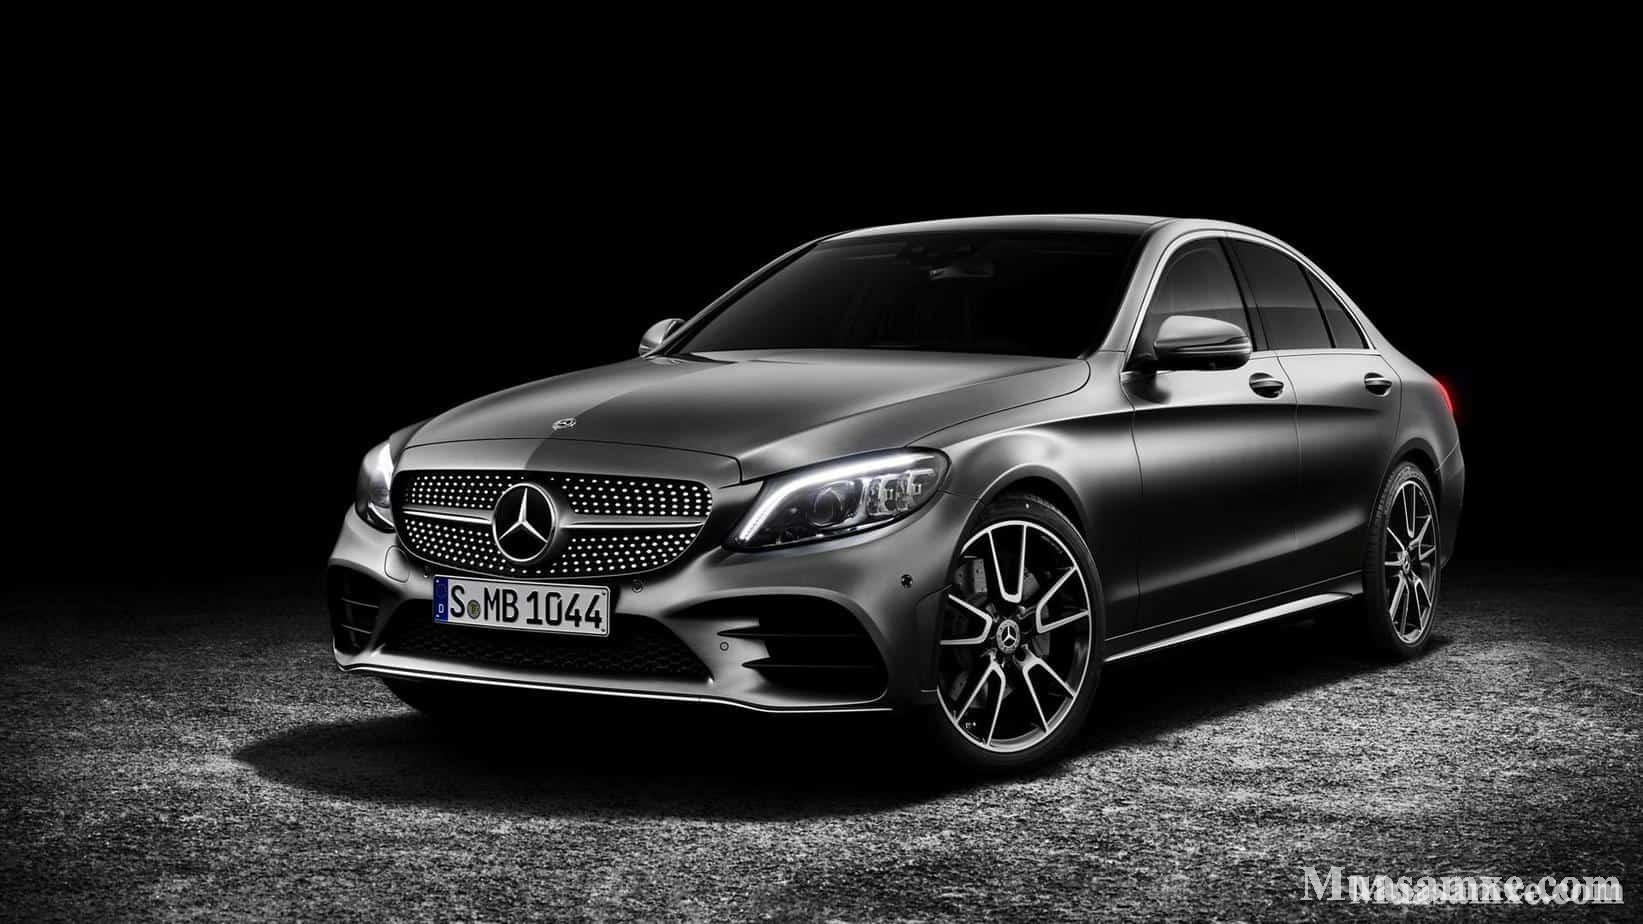 Hình ảnh Mercedes GLE 450 4Matic 2020 mới nhất rất đẹp giá từ 4369 tỷ